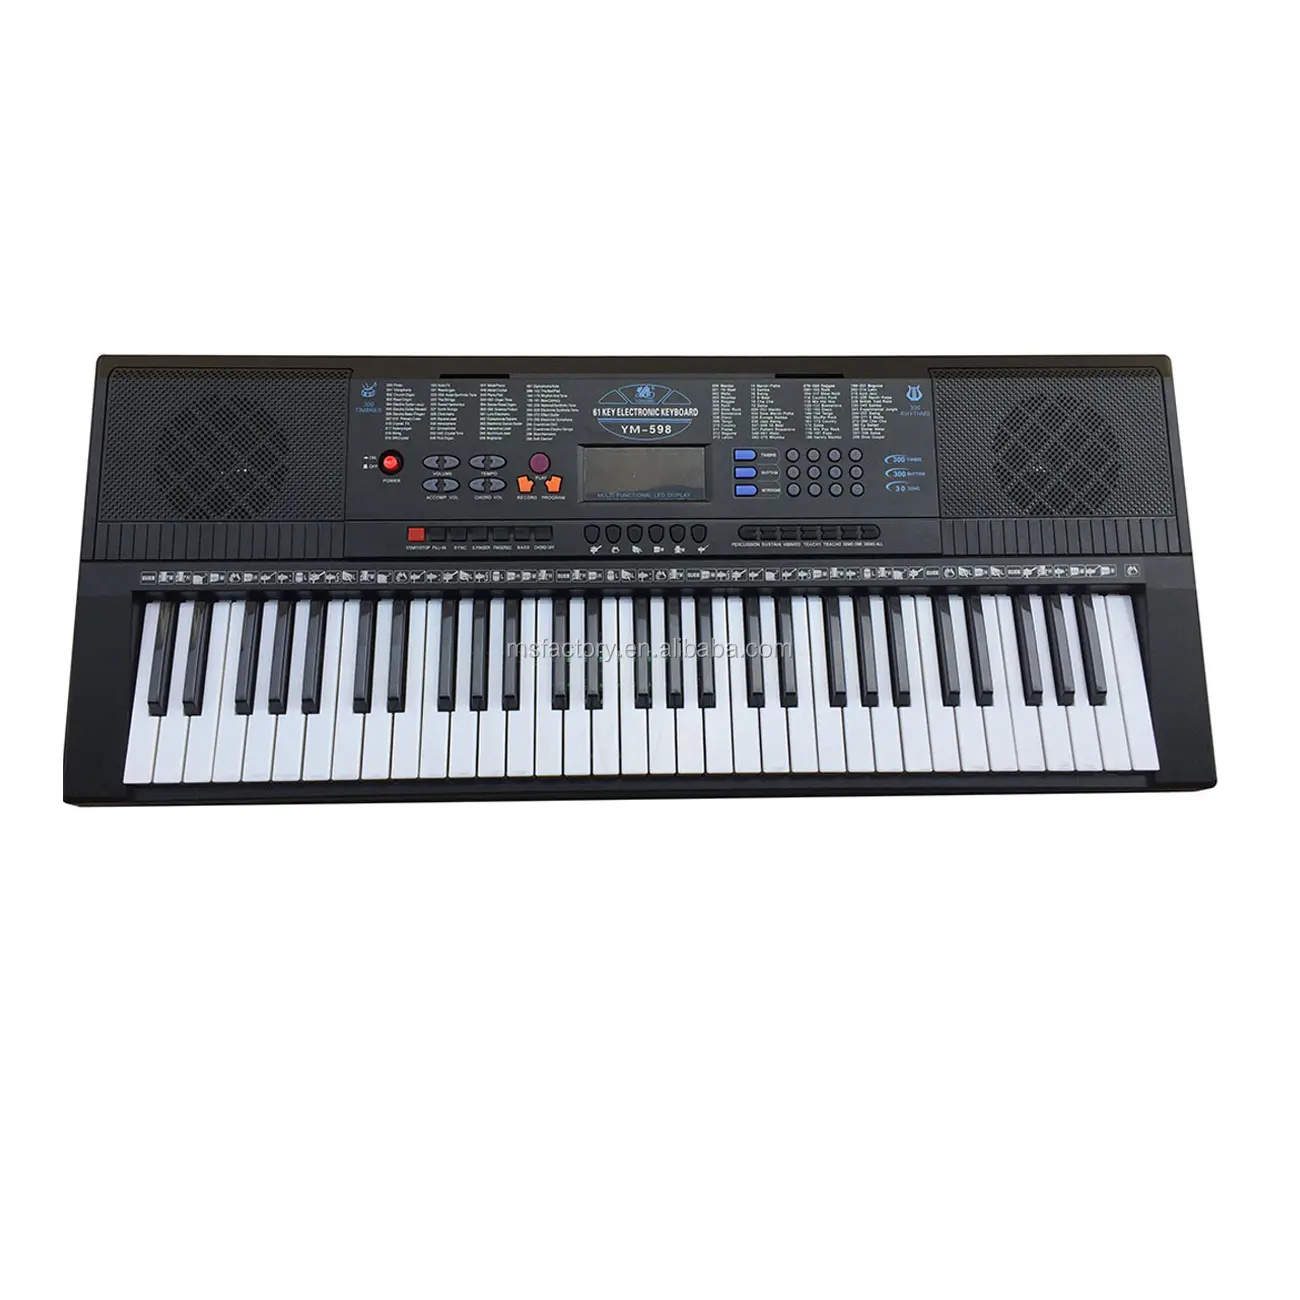 لوحة مفاتيح موسيقية إلكترونية متعددة الوظائف 61 مفتاح, هدية موسيقية للبيانو الكهربائي